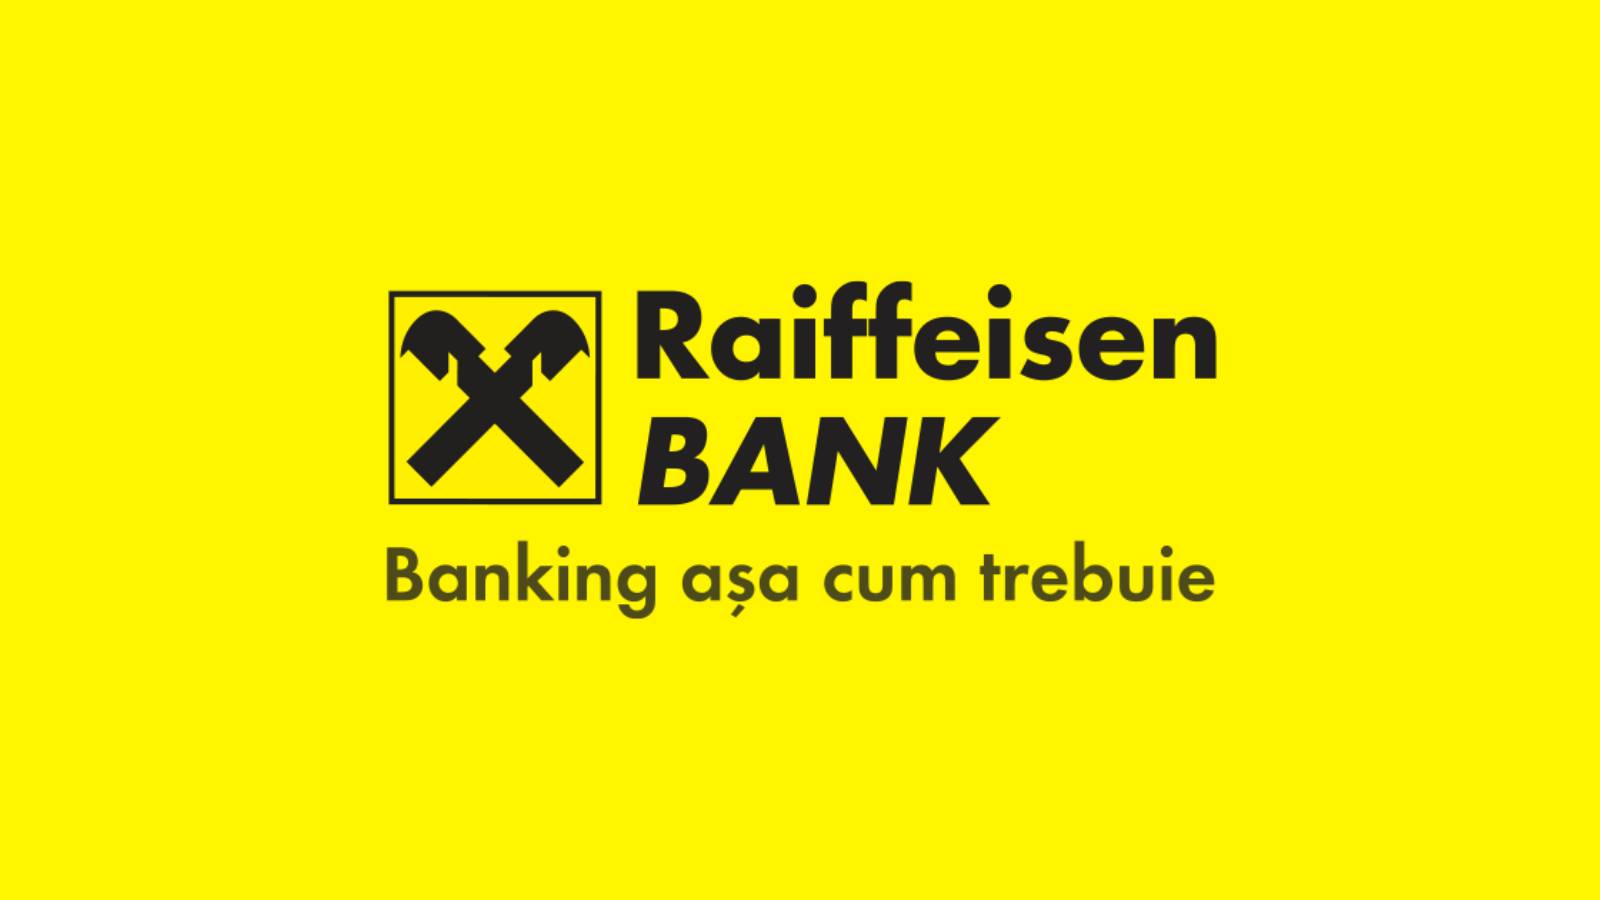 Raiffeisen Bank job